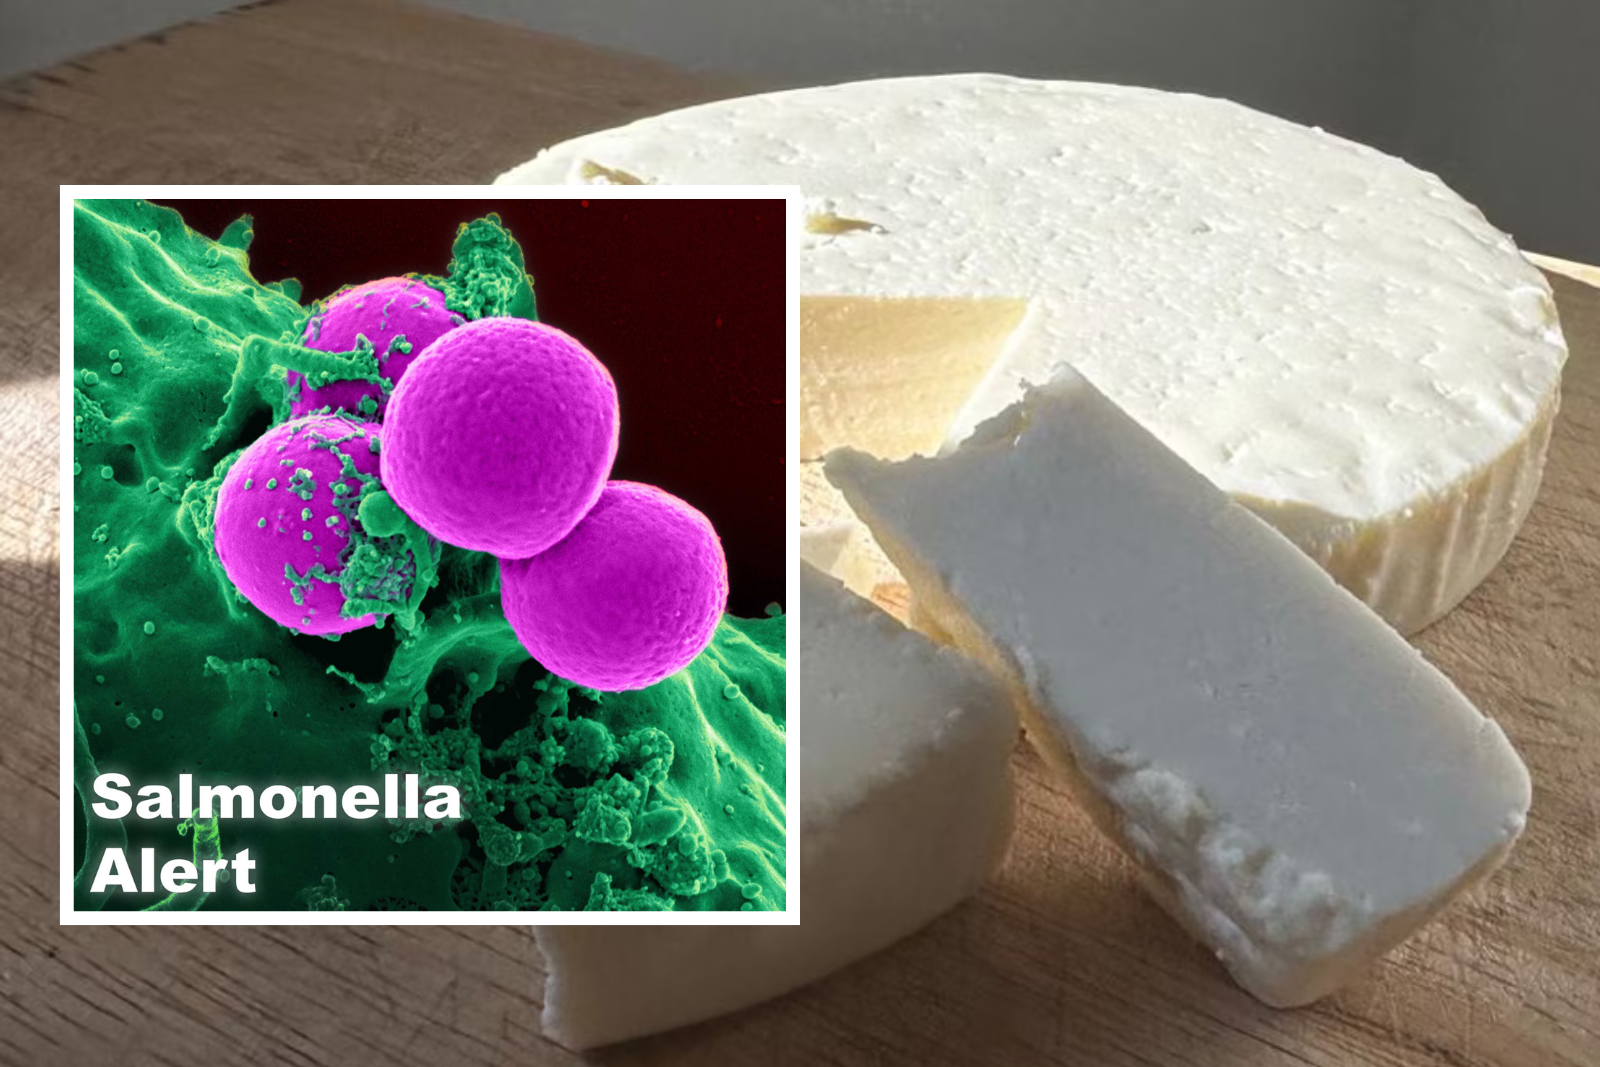 Salmonella Alert: Cream Cheese Recalled in 8 States Sparks Safety Concerns